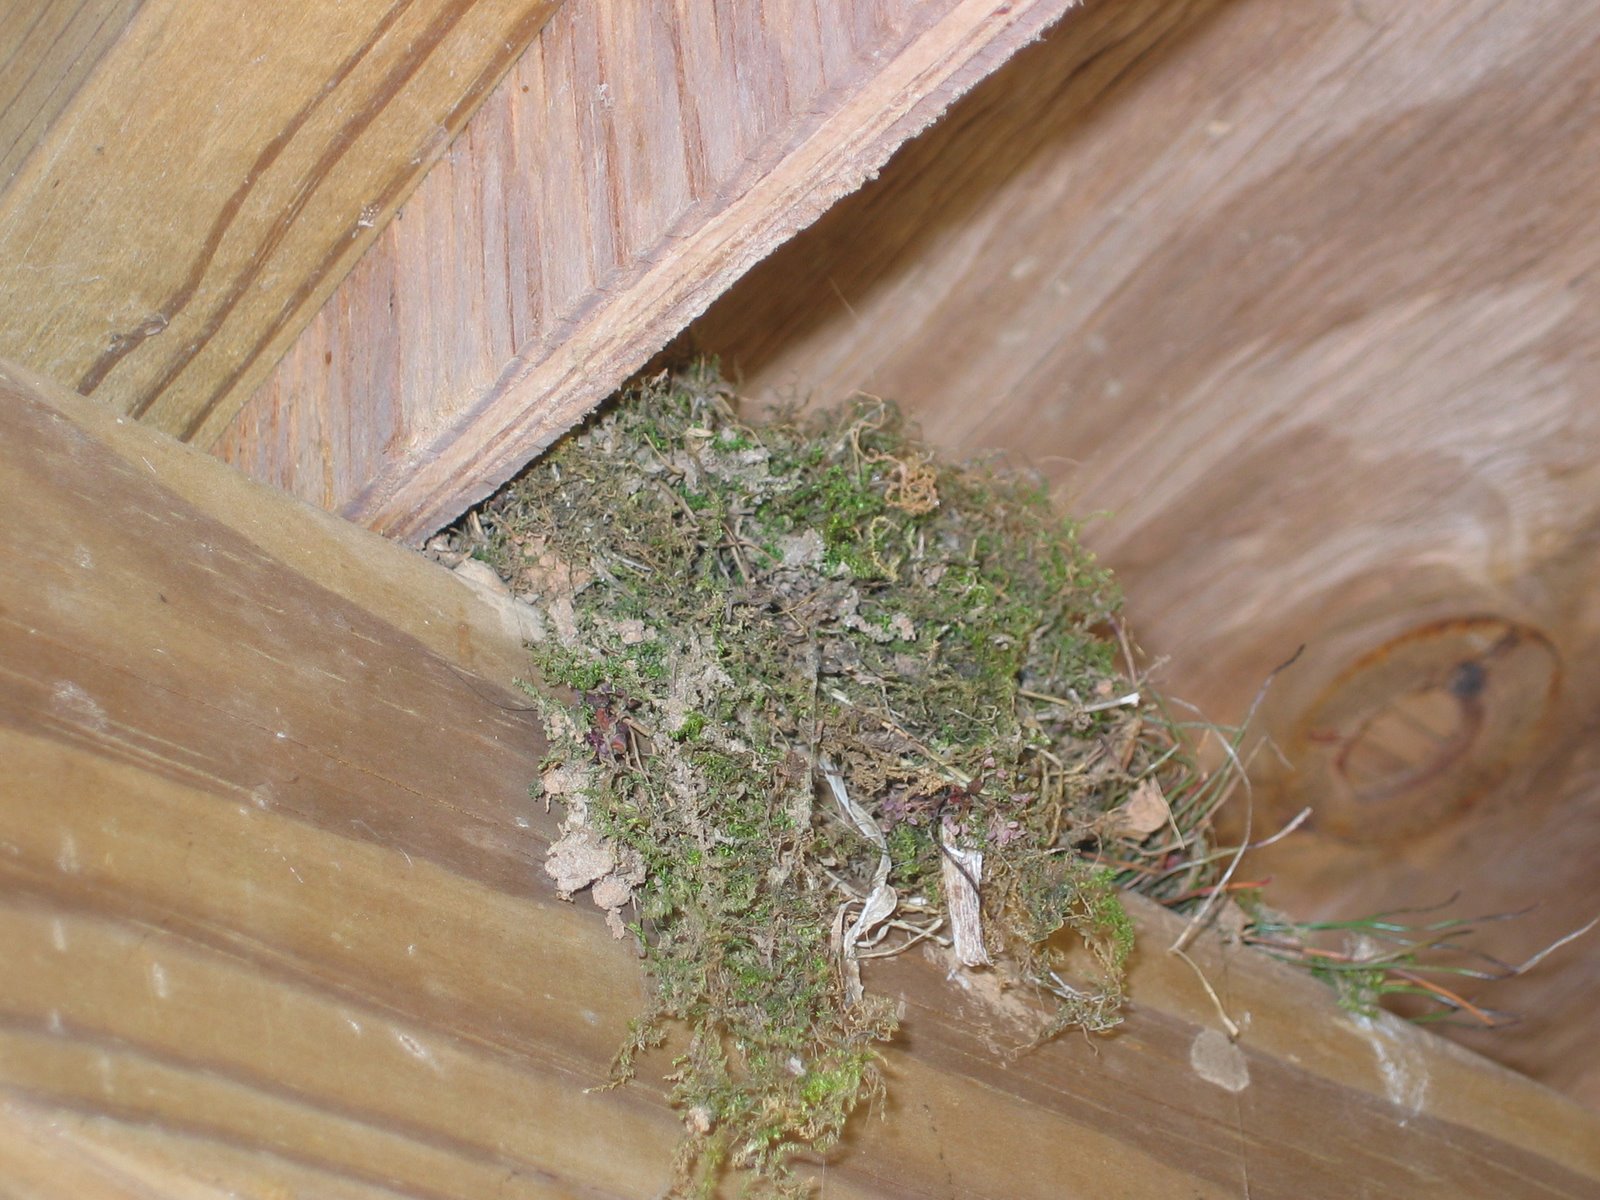 Thrasher nest